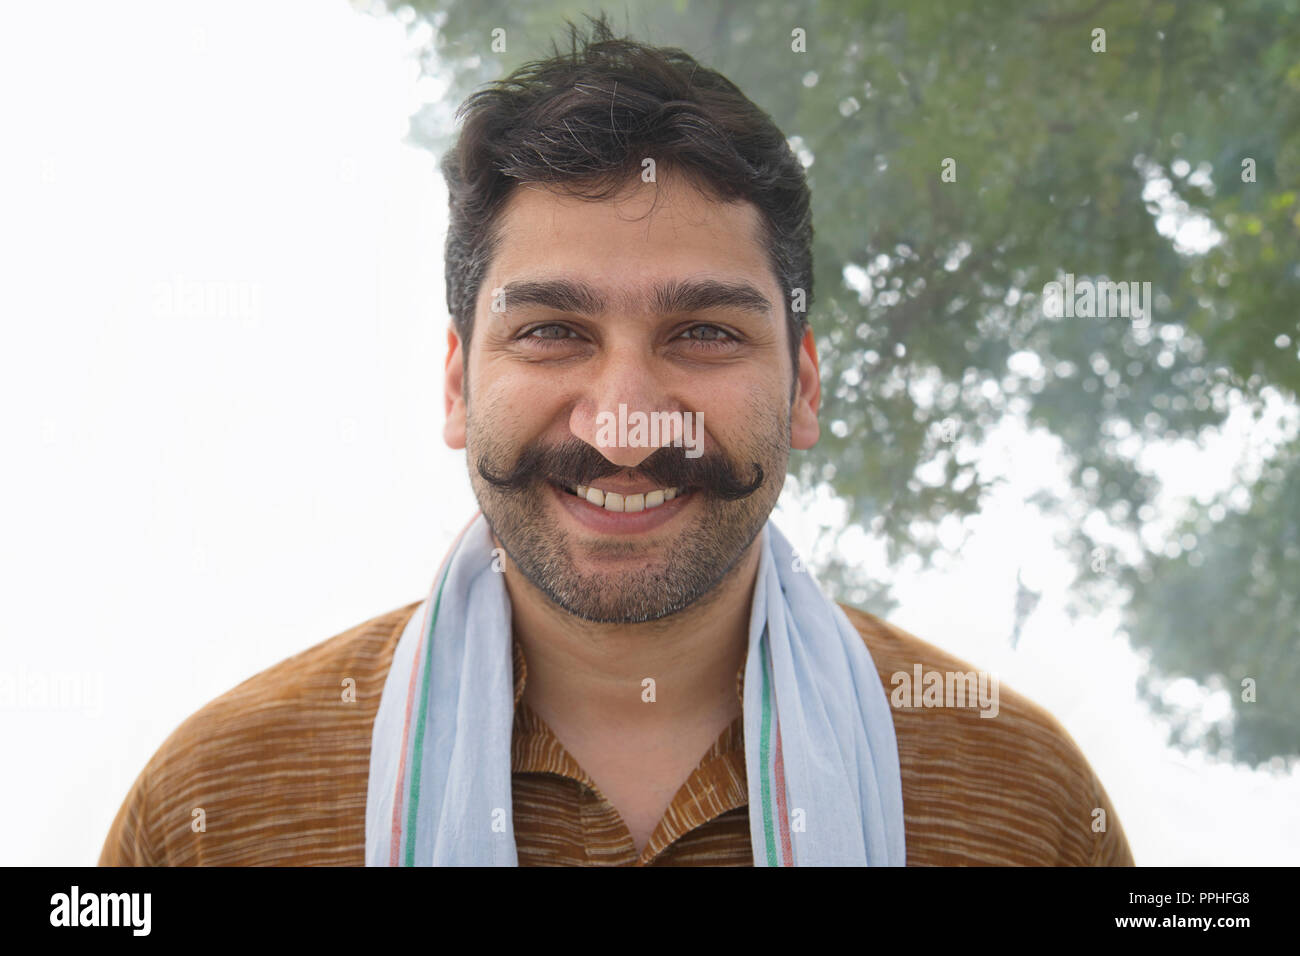 Retrato de un hombre de la aldea sonriente haber rizado bigote. Foto de stock